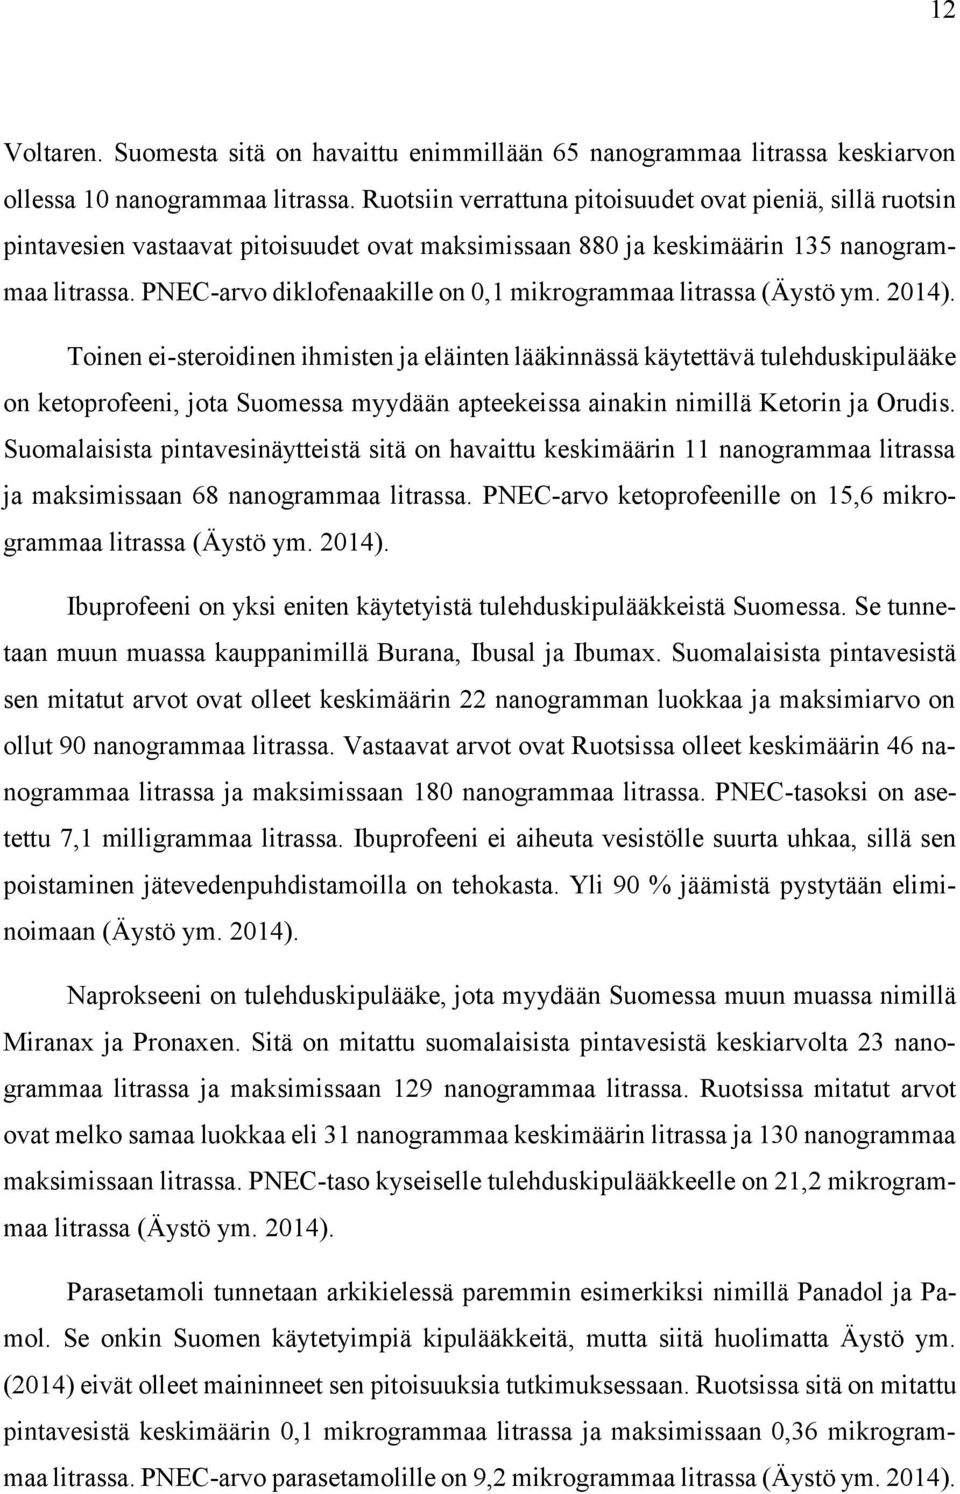 PNEC-arvo diklofenaakille on 0,1 mikrogrammaa litrassa (Äystö ym. 2014).